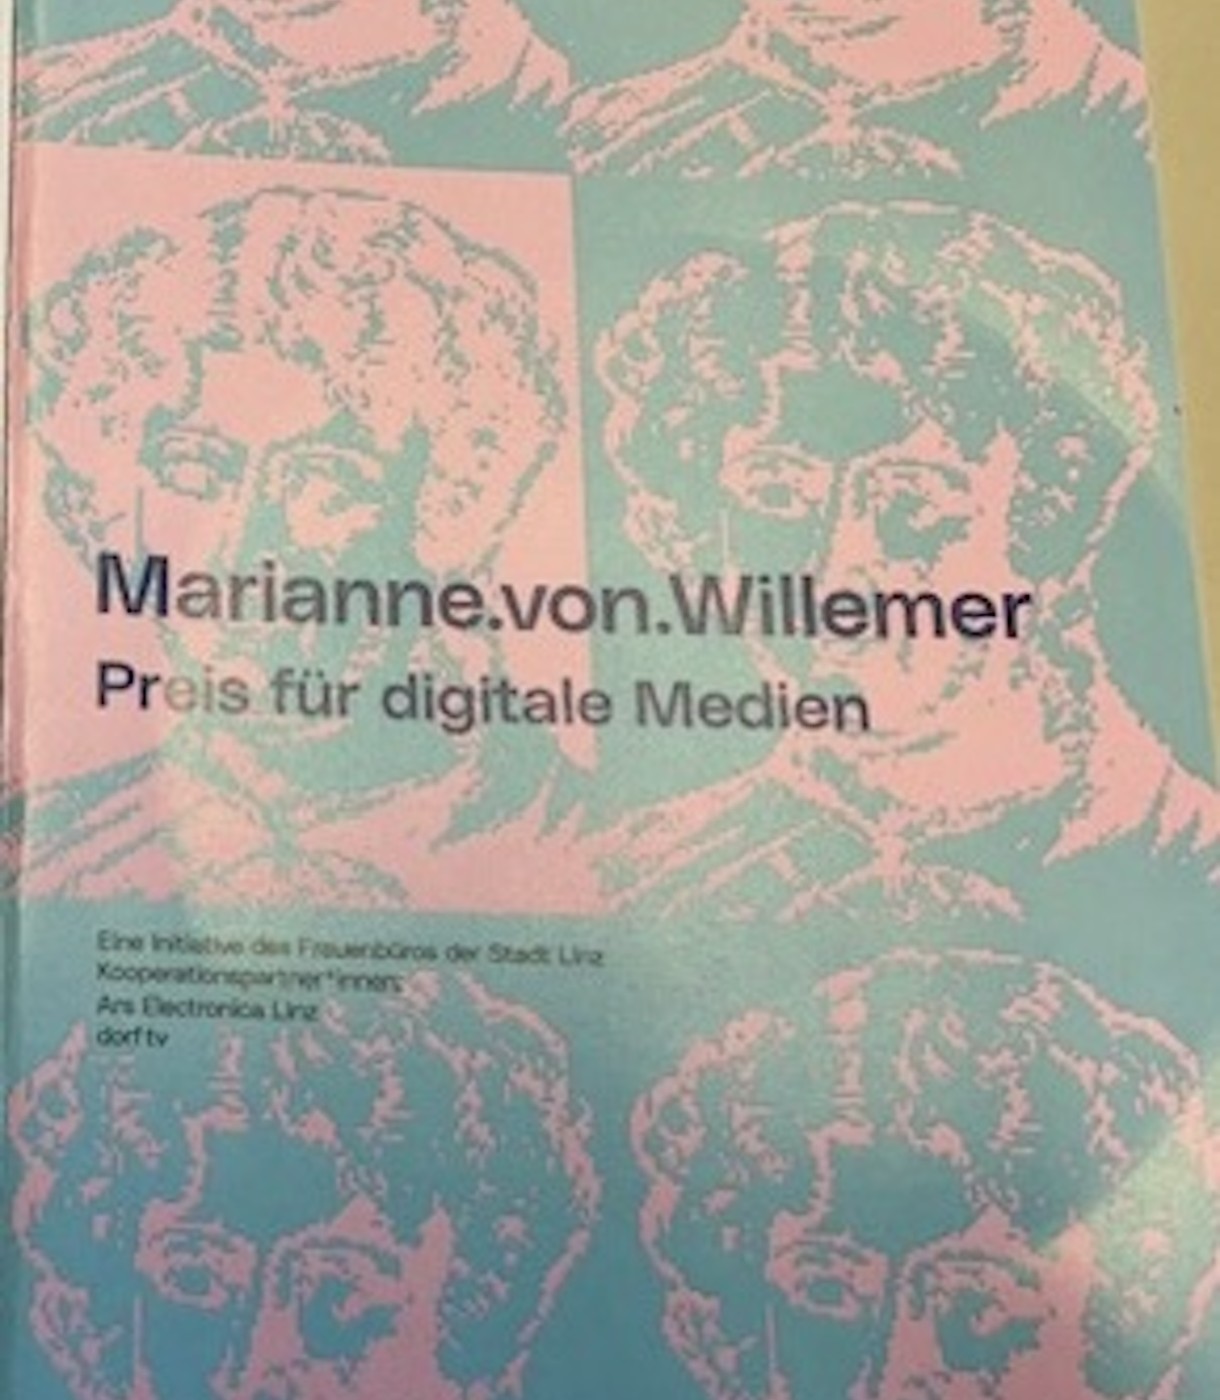 Marianne.von.Willemer-Preis für digitale Medien: Jetzt einreichen